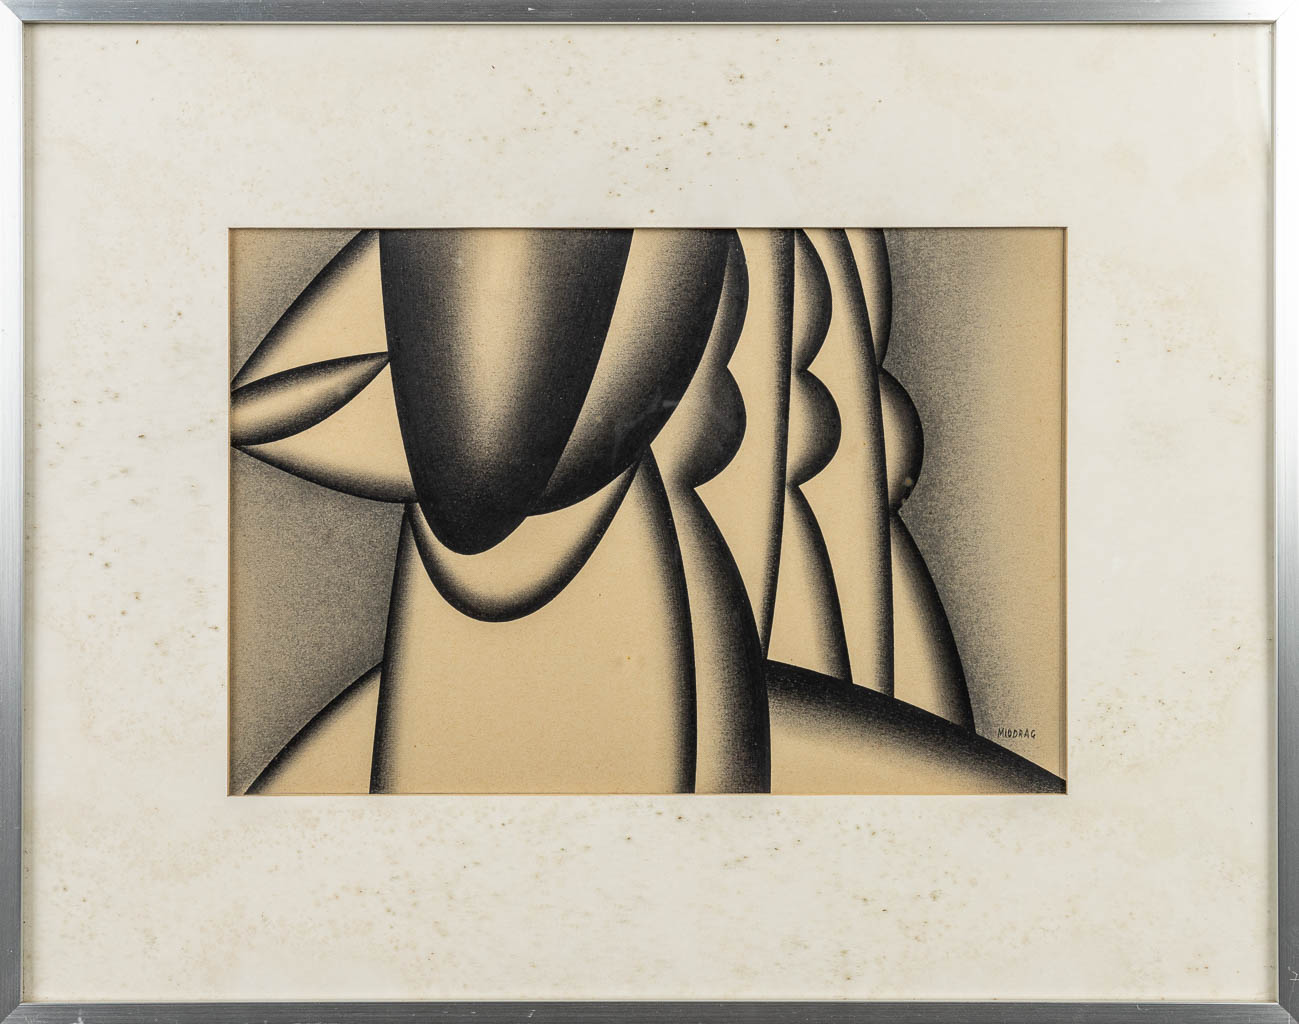 Dordevic MIODRAG (1936) 'Compositie' een tekening, potlood op papier. (31 x 22 cm)